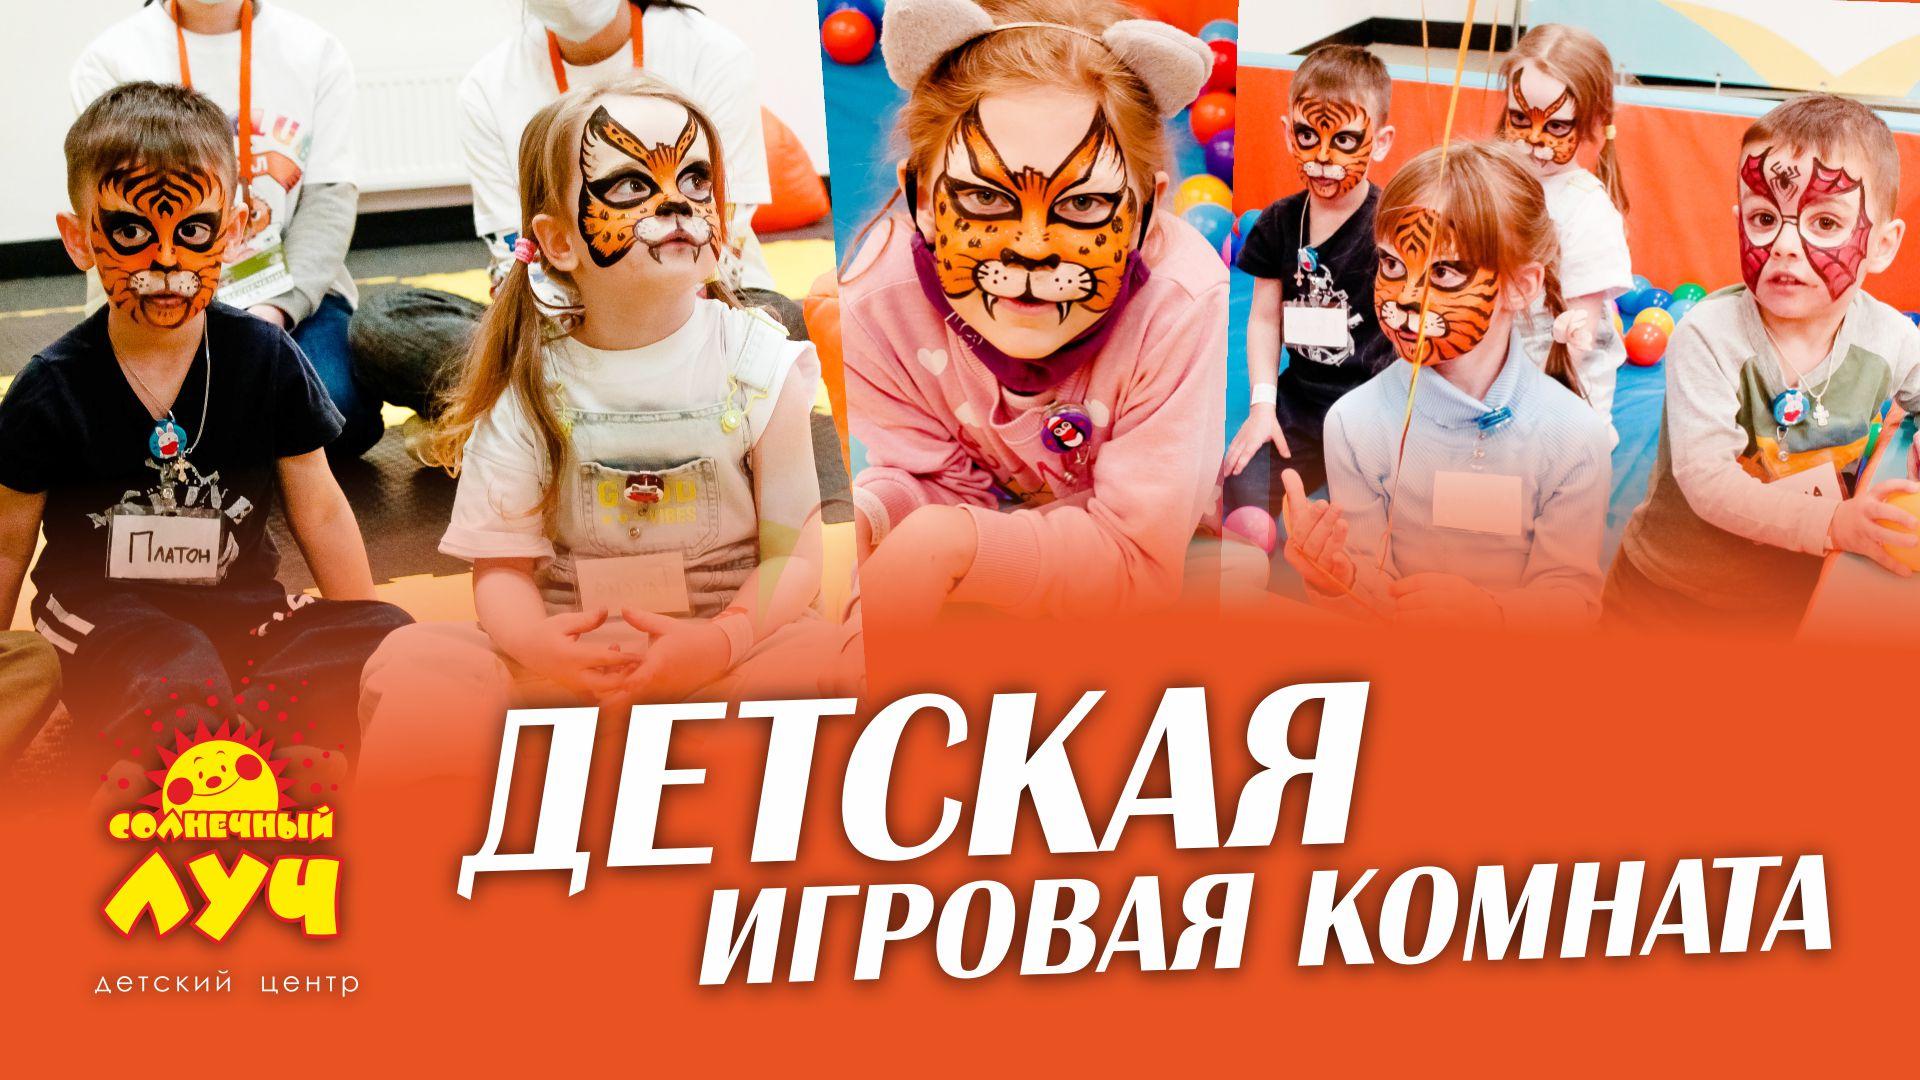 Запись в детскую игровую комнату на матч «Урал» - «Химки»!